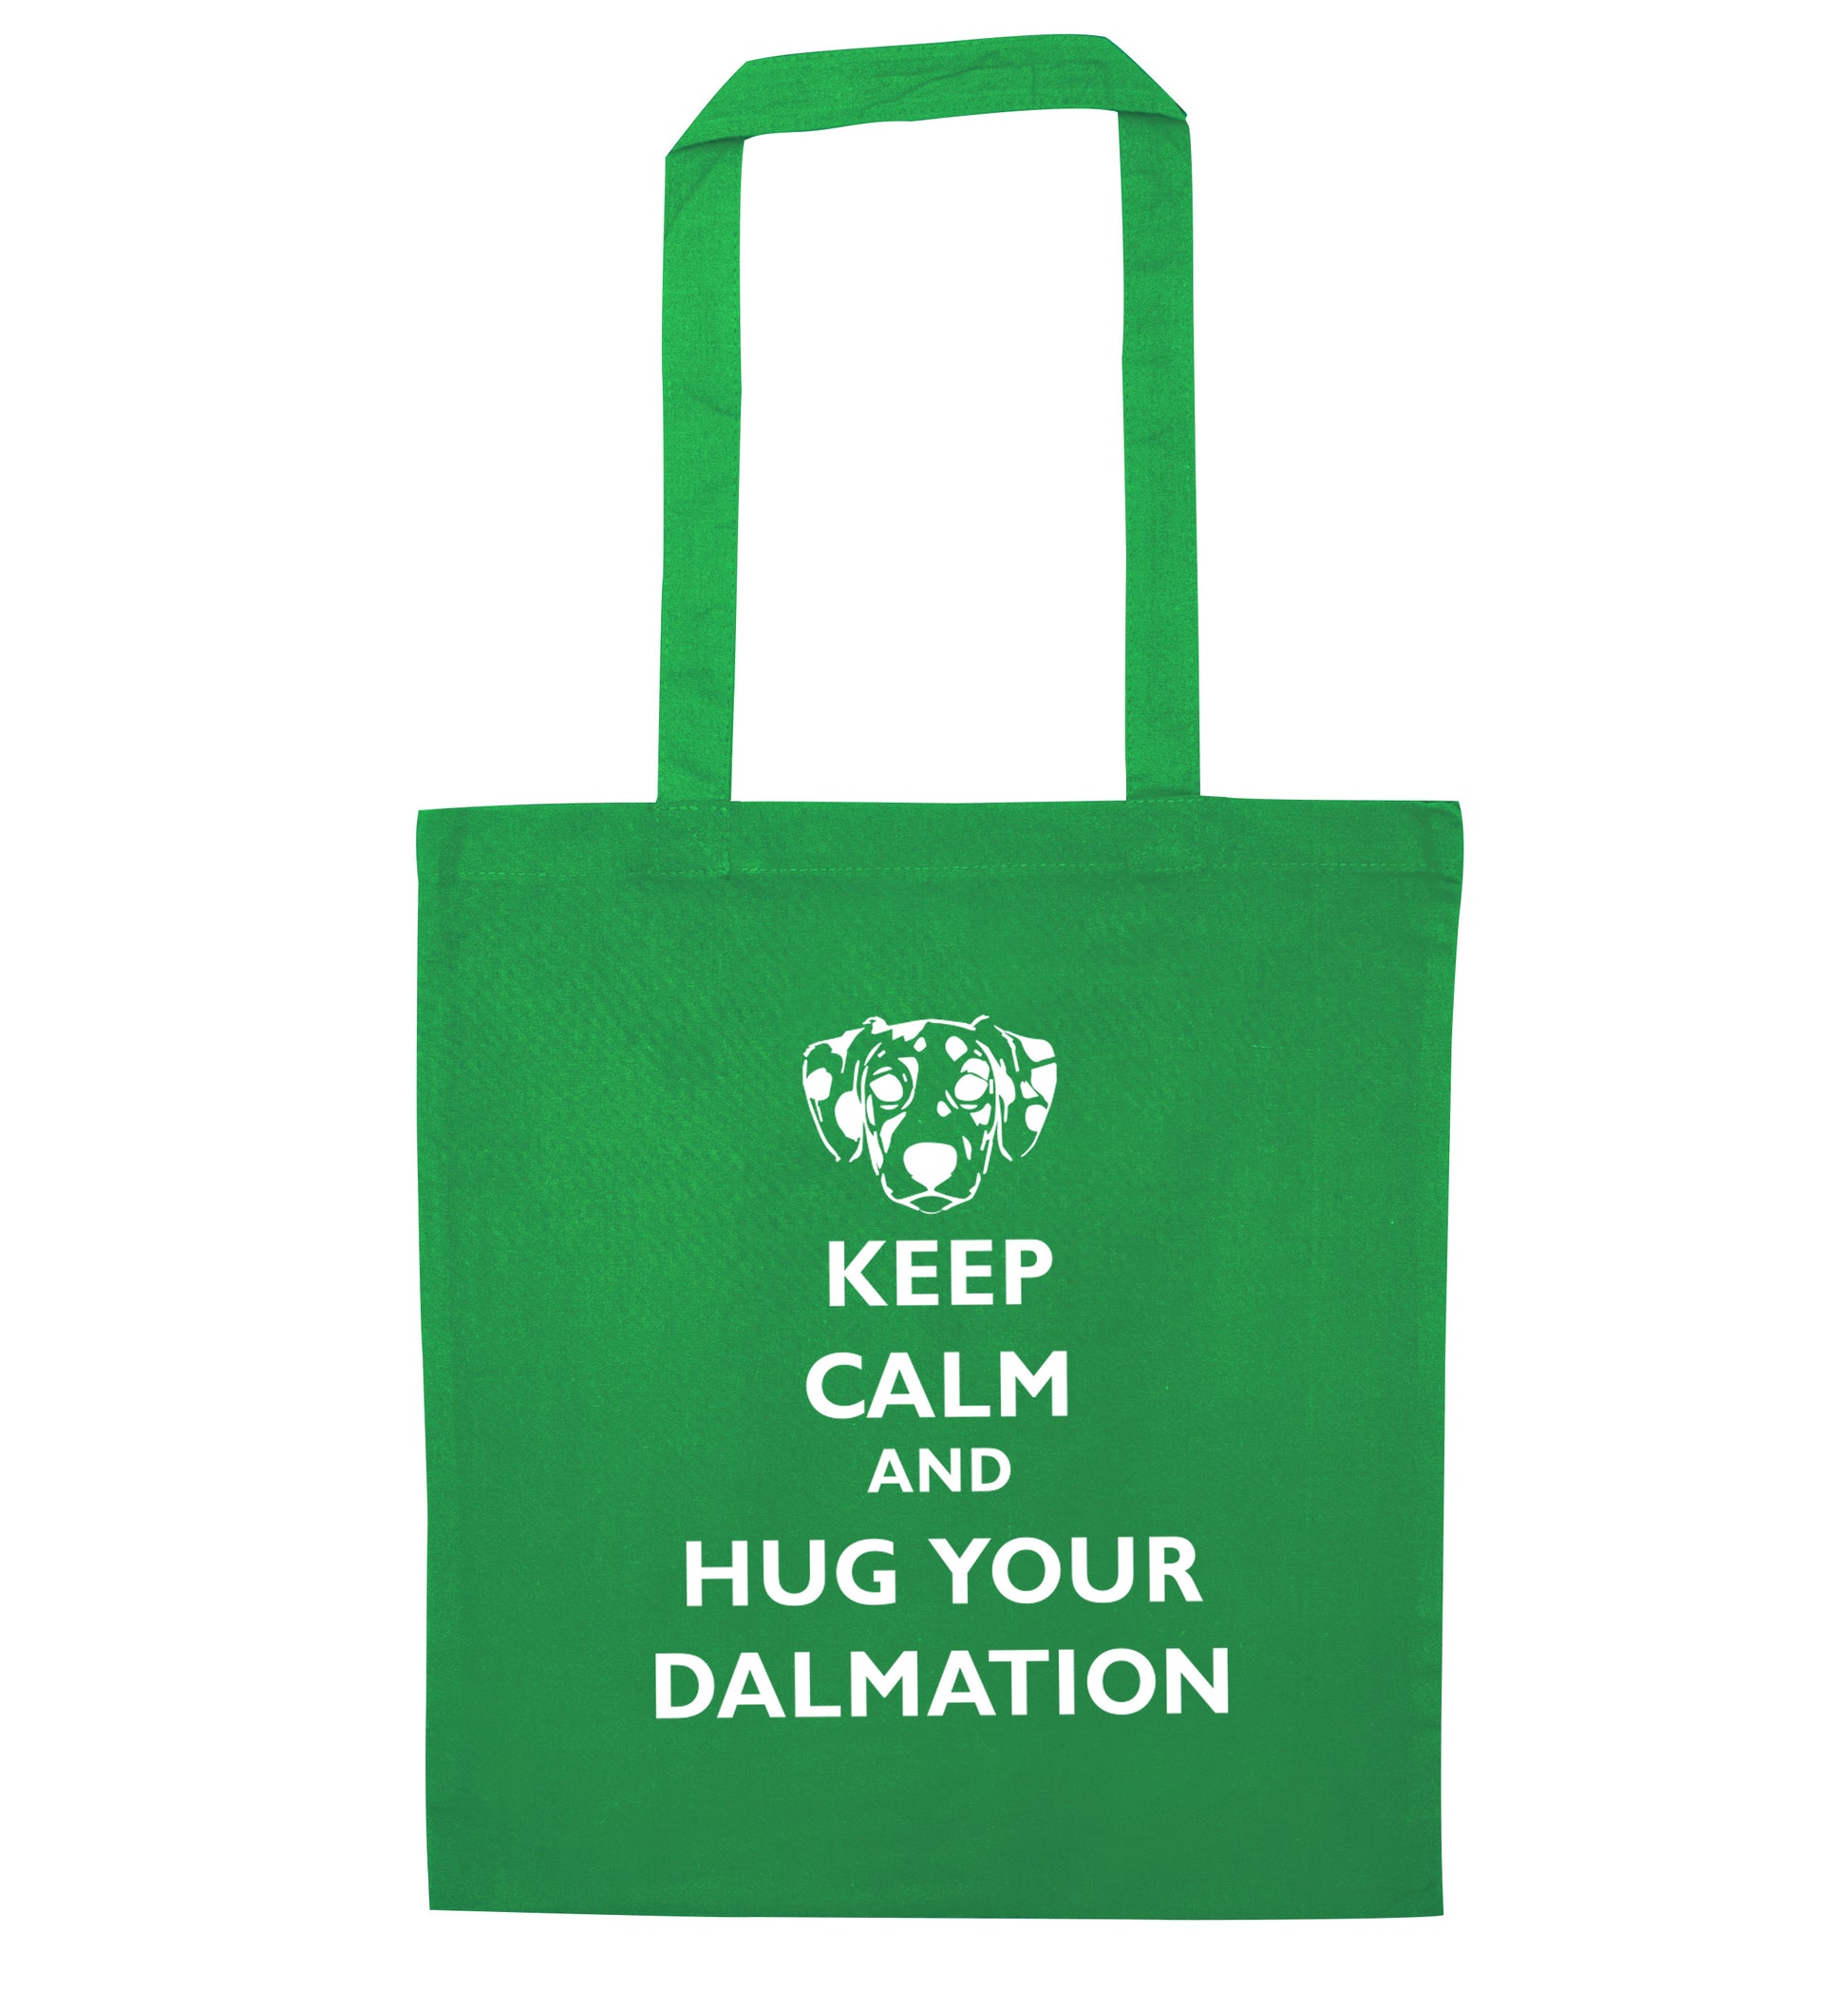 Keep calm and hug your dalmation green tote bag